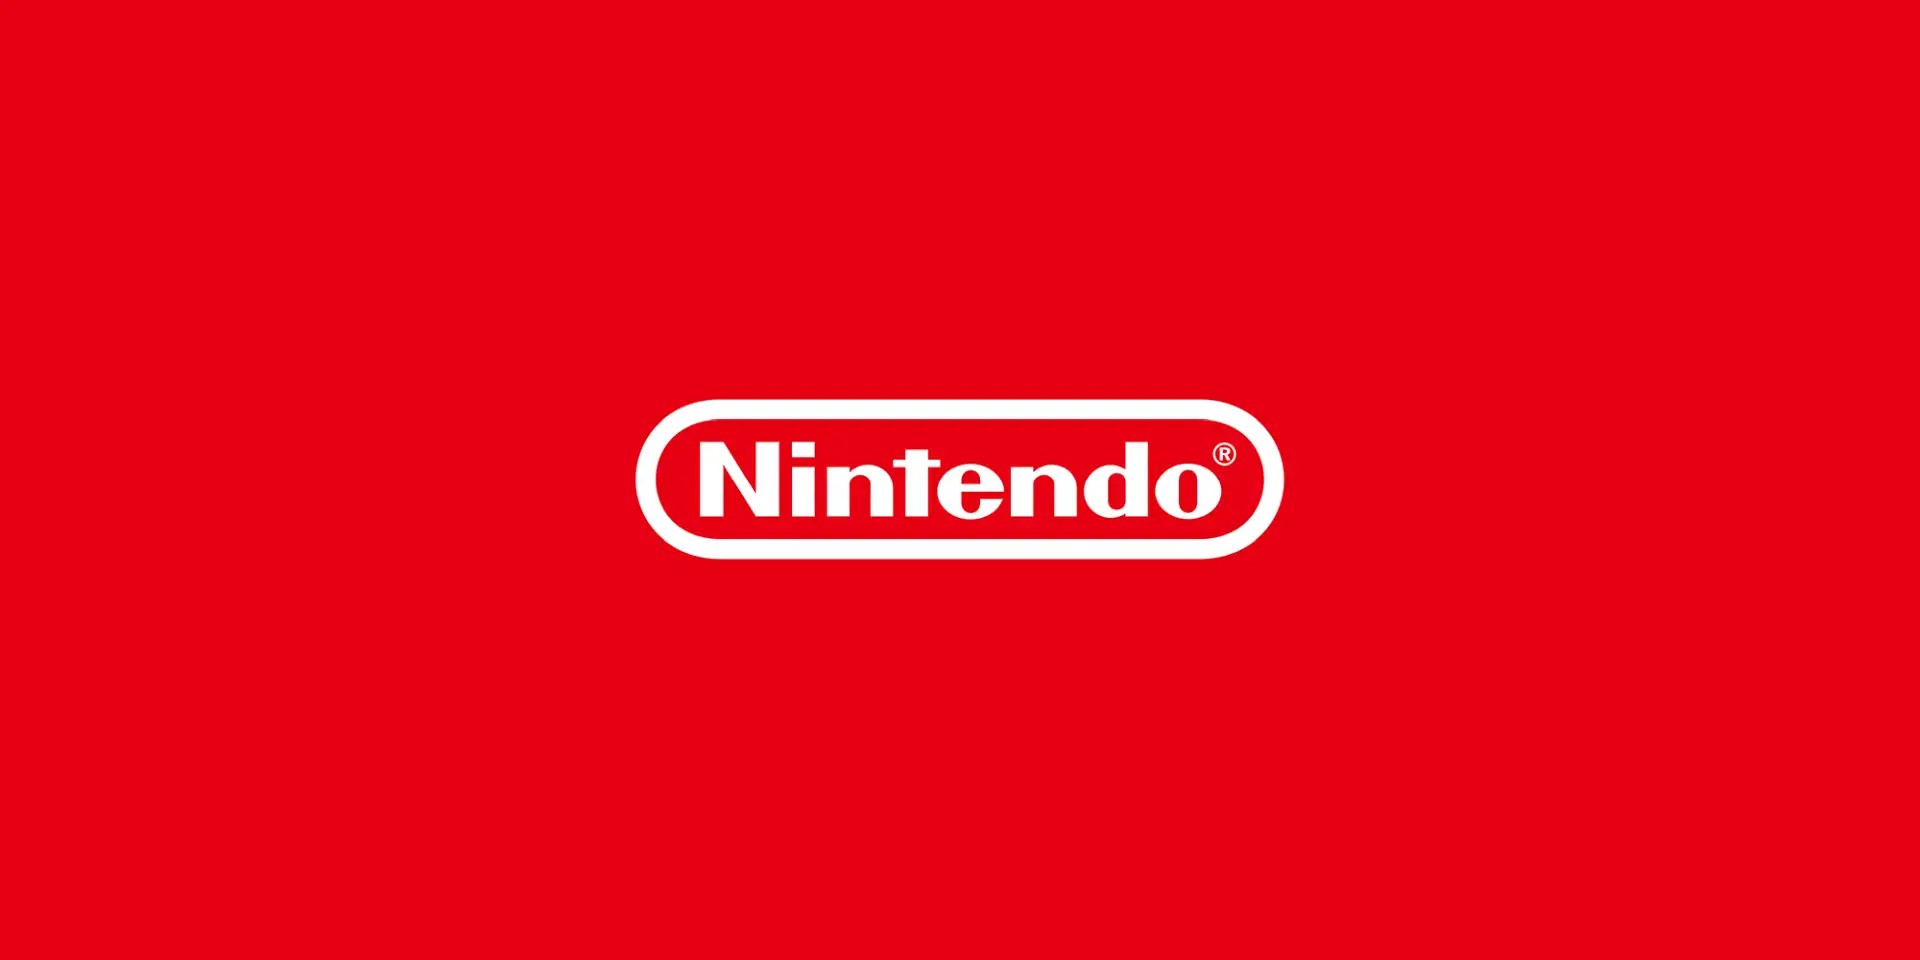 Nintendo torna a parlare della prossima console, userà i Nintendo Account per una transizione indolore